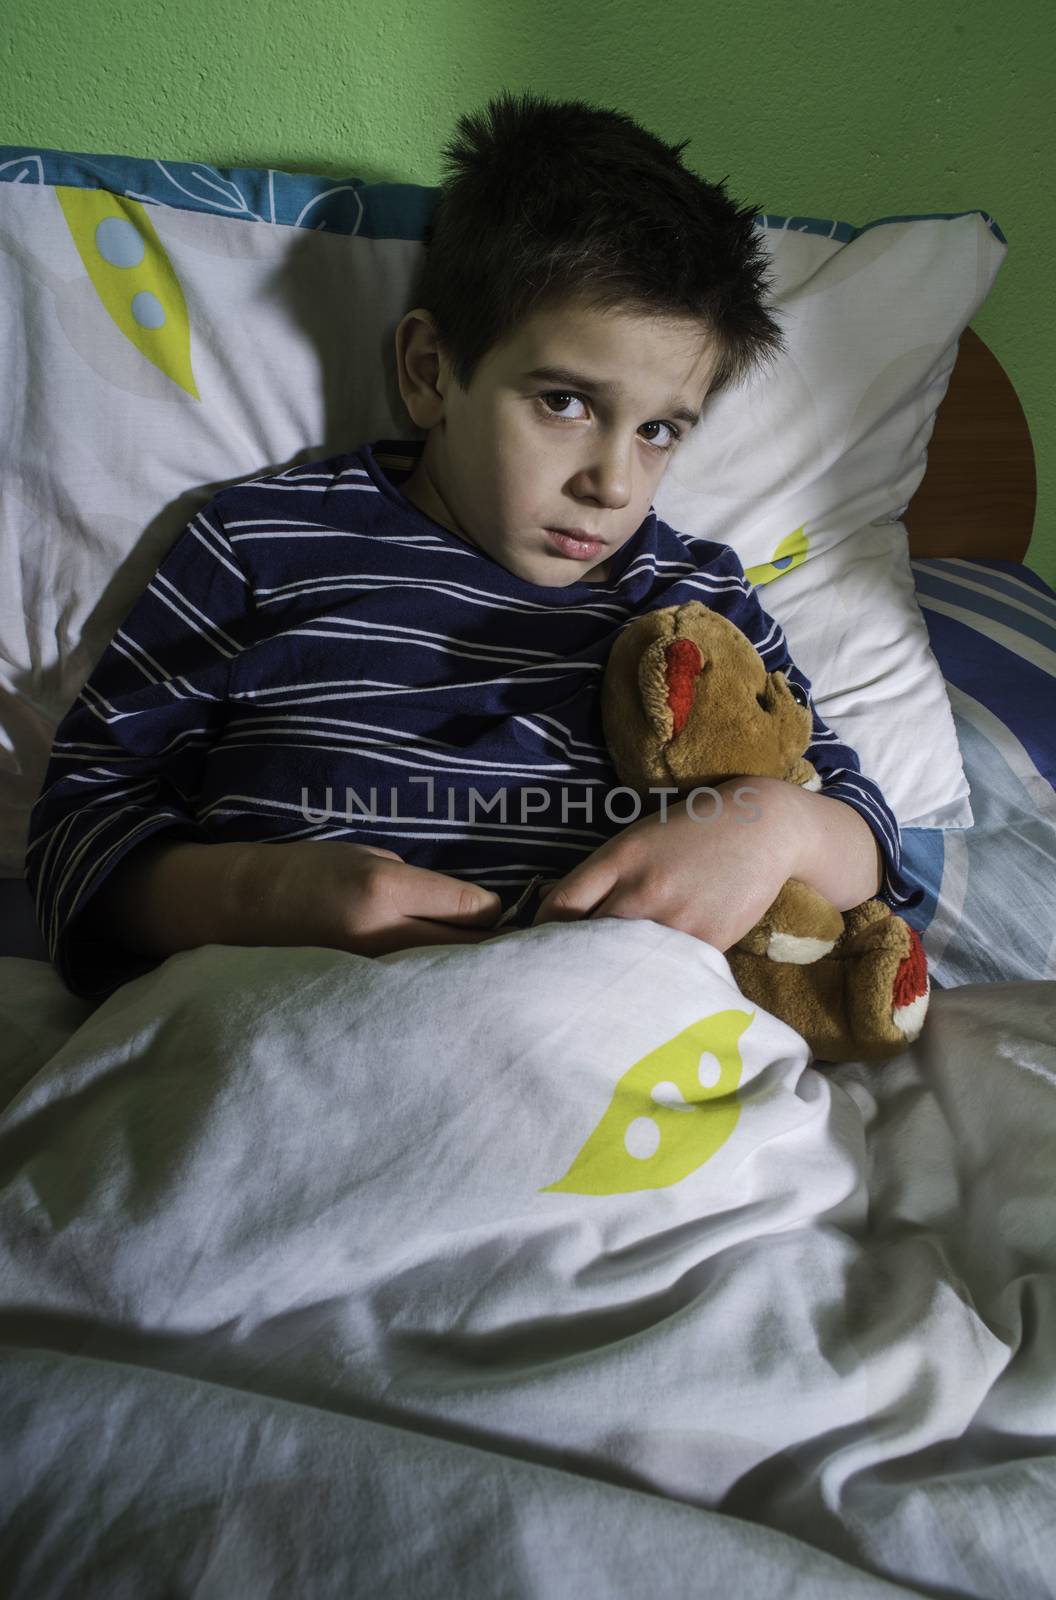 Sick child in bed with teddy bear by deyan_georgiev